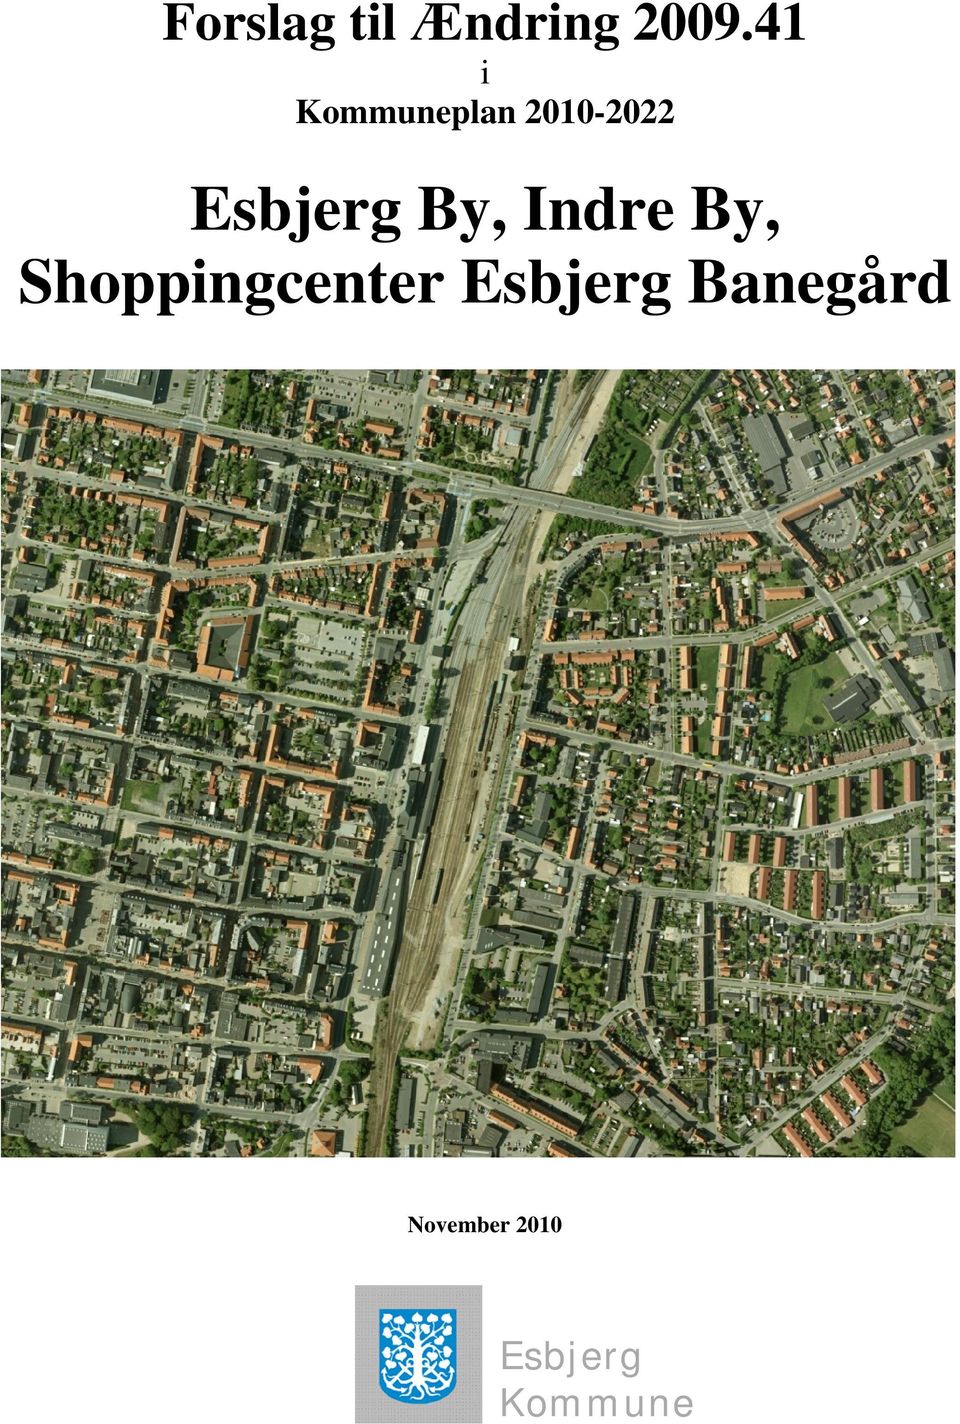 Shoppingcenter Esbjerg